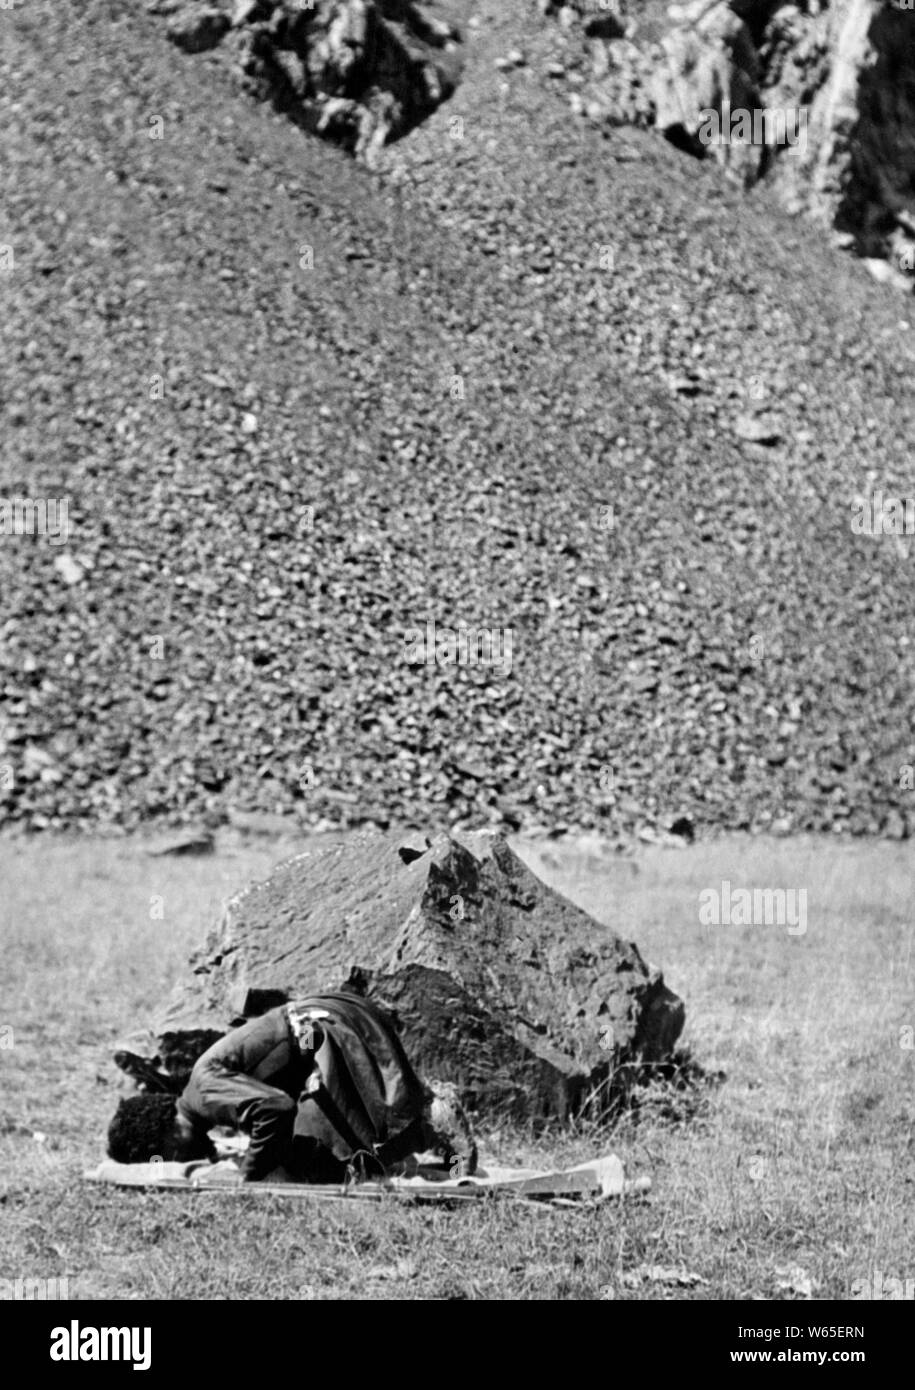 Un chasseur de musulmans en prière, 1930 Banque D'Images